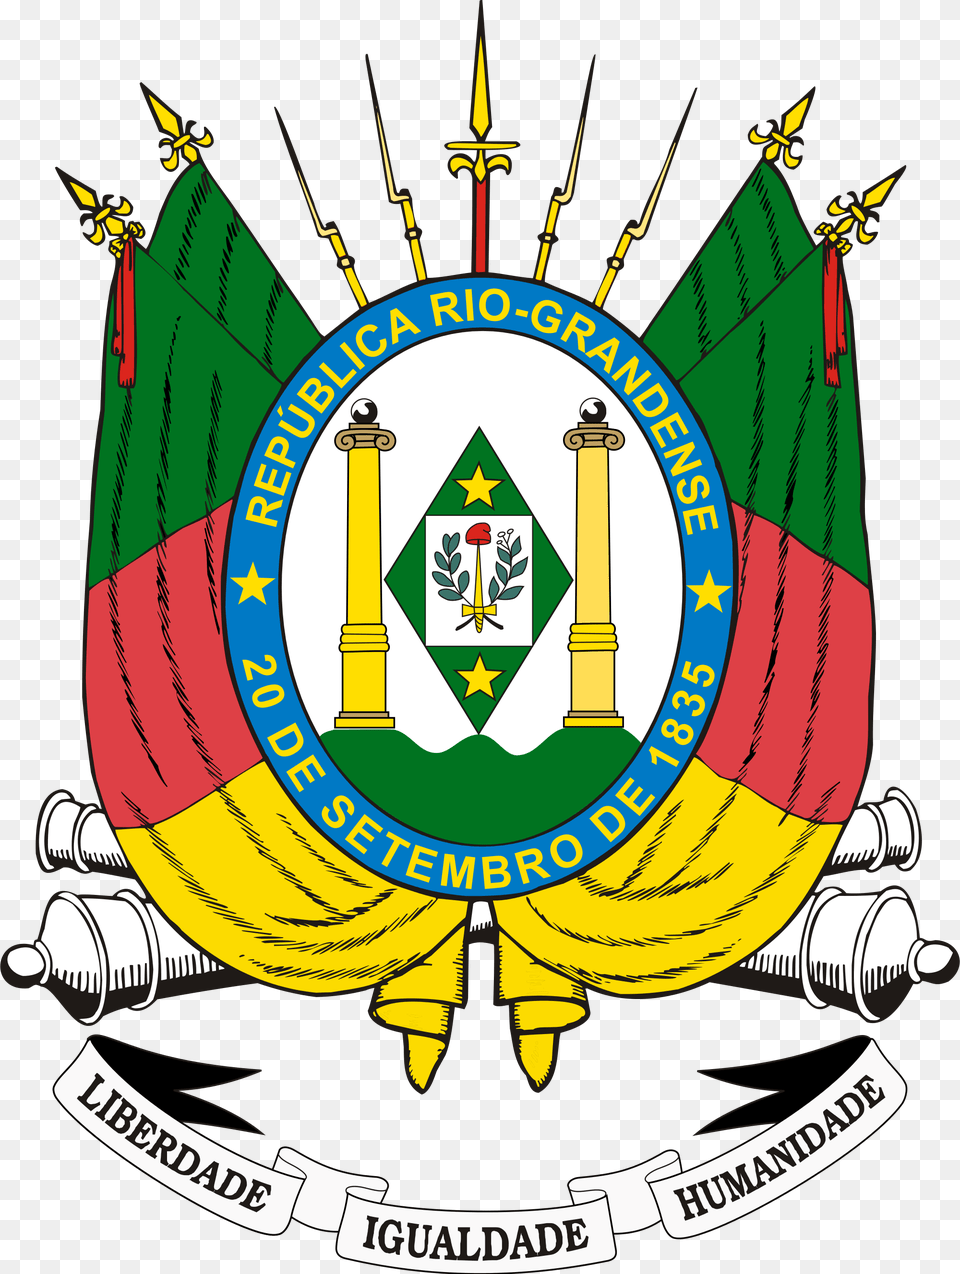 Open Bandeira Rio Grande Do Sul Vetor, Emblem, Symbol, Logo, Badge Free Png